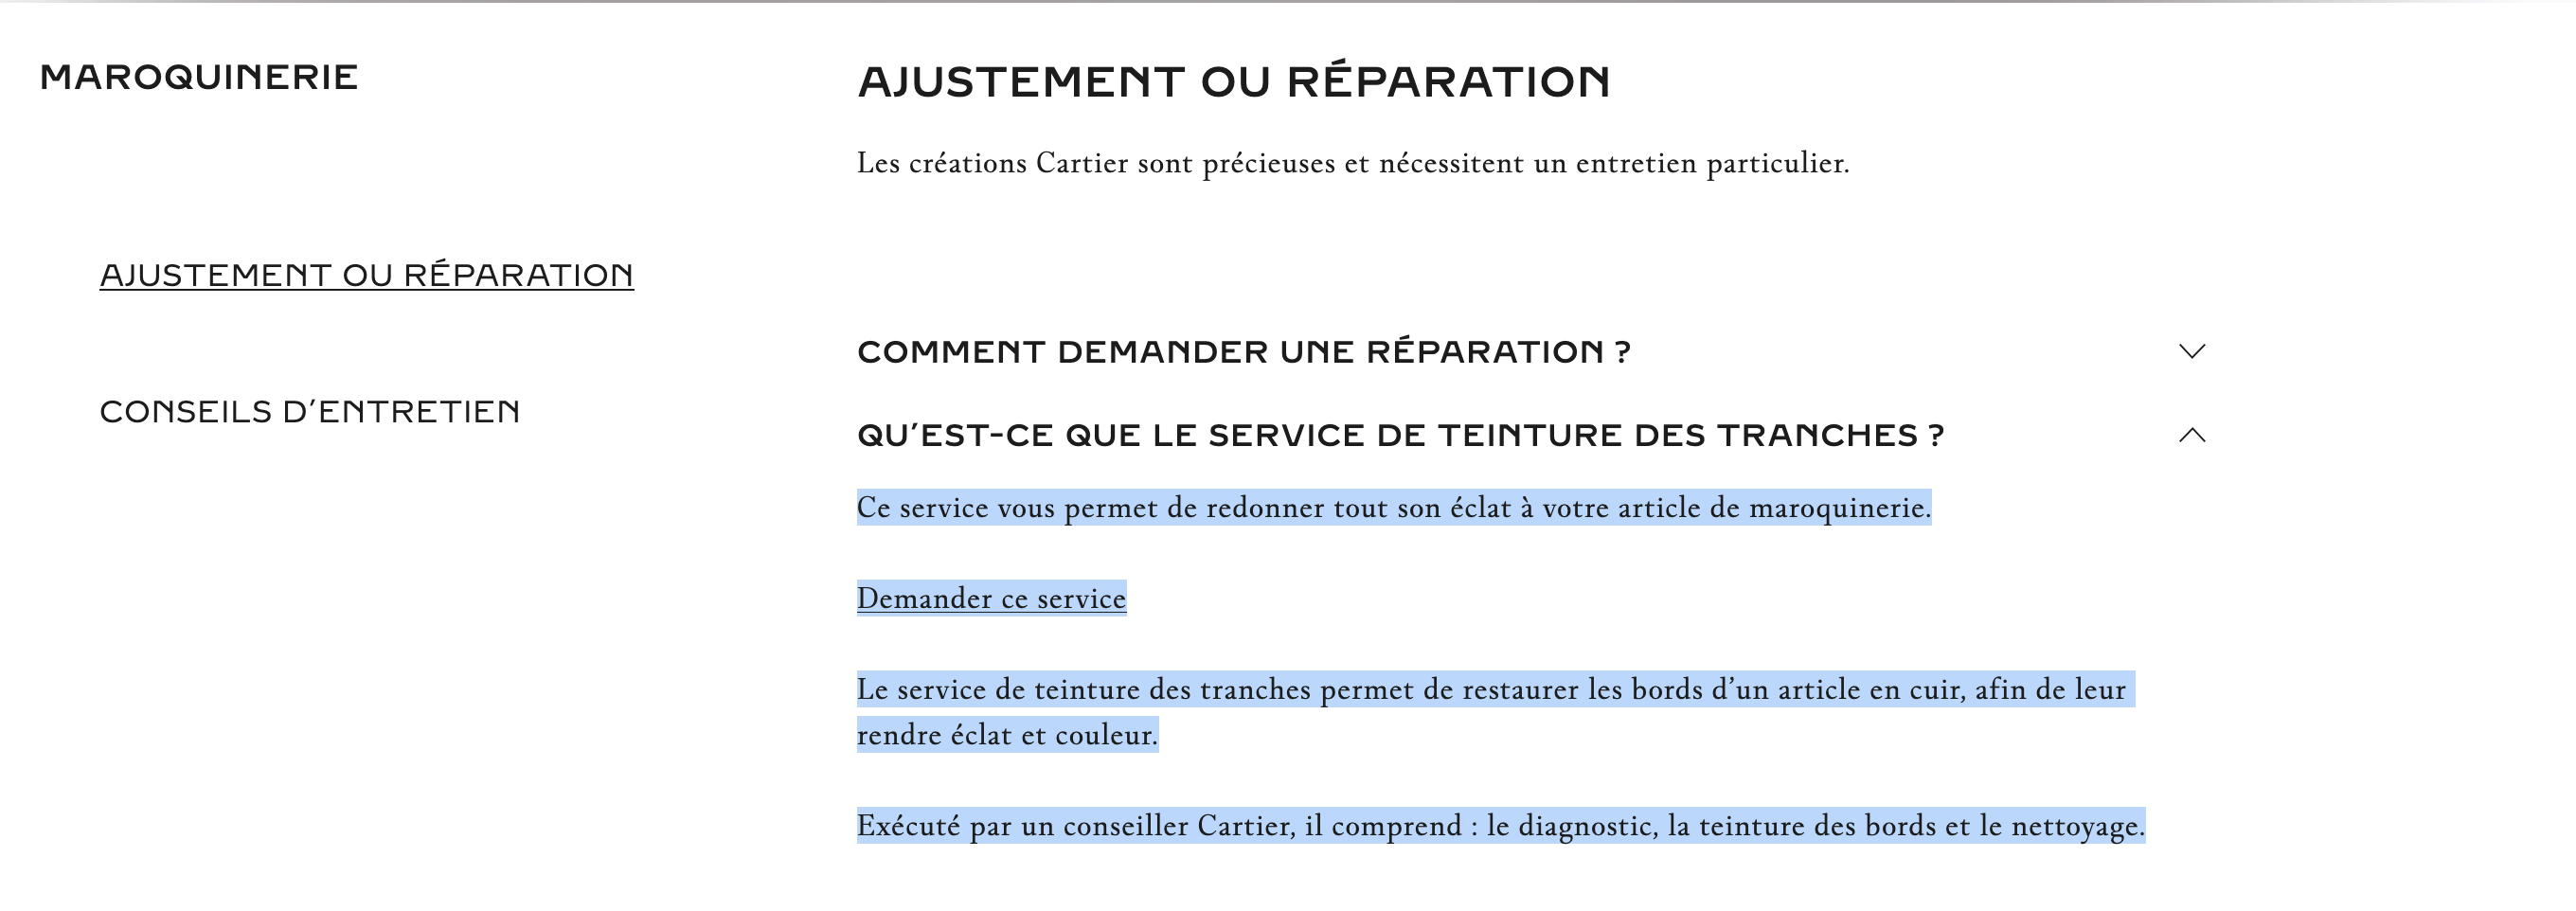 Cartier parle de “teinture de tranche” et propose même un service de réparation.  (Source: Cartier)